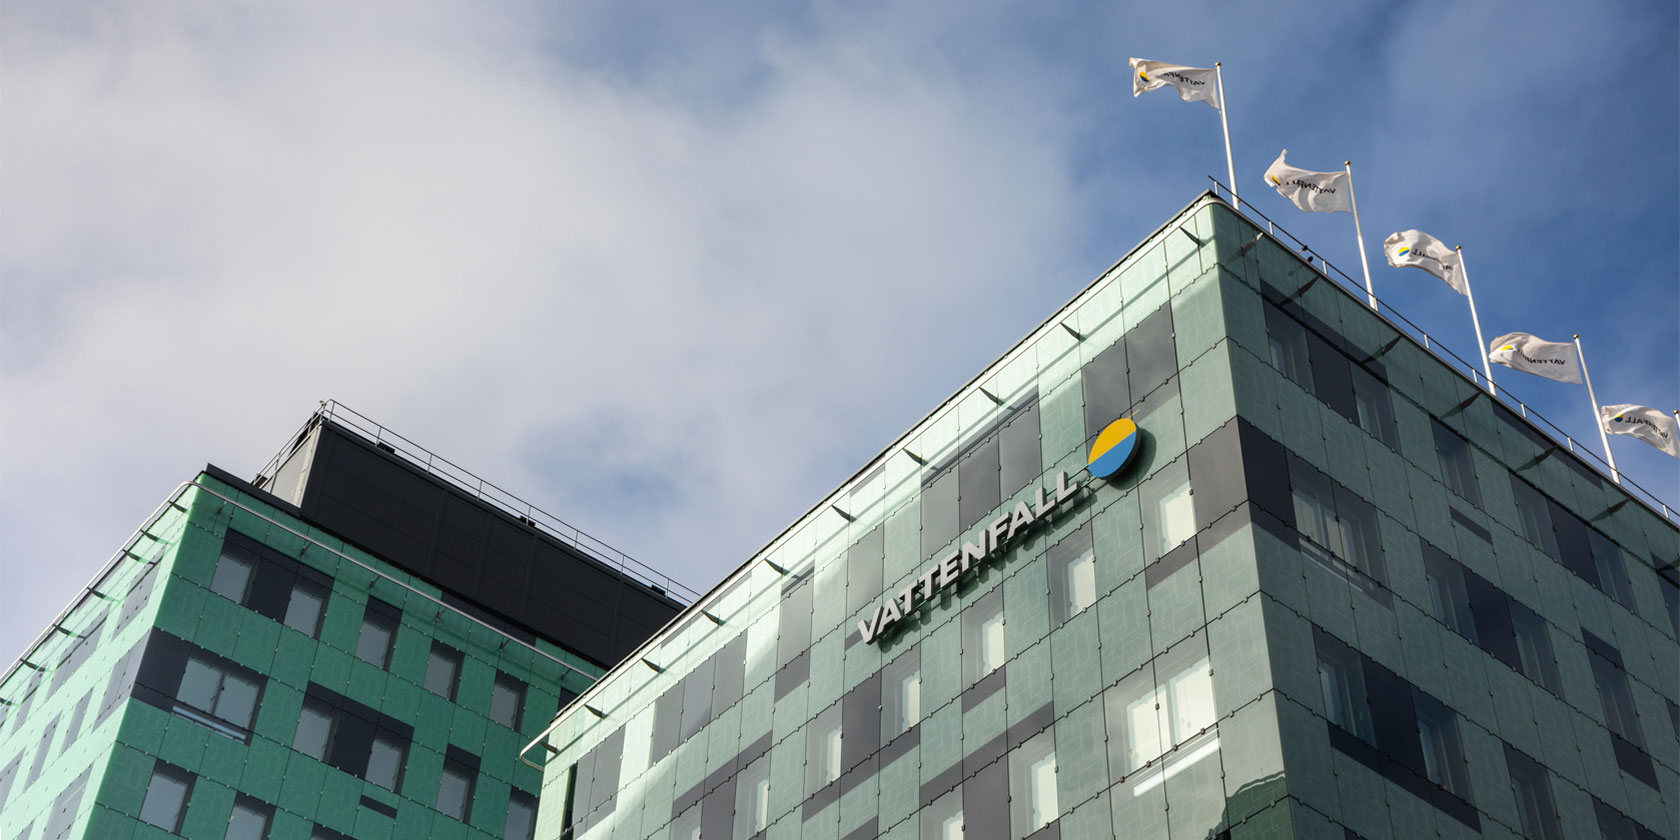 Le siège de Vattenfall se situe à Solna, en Suède.